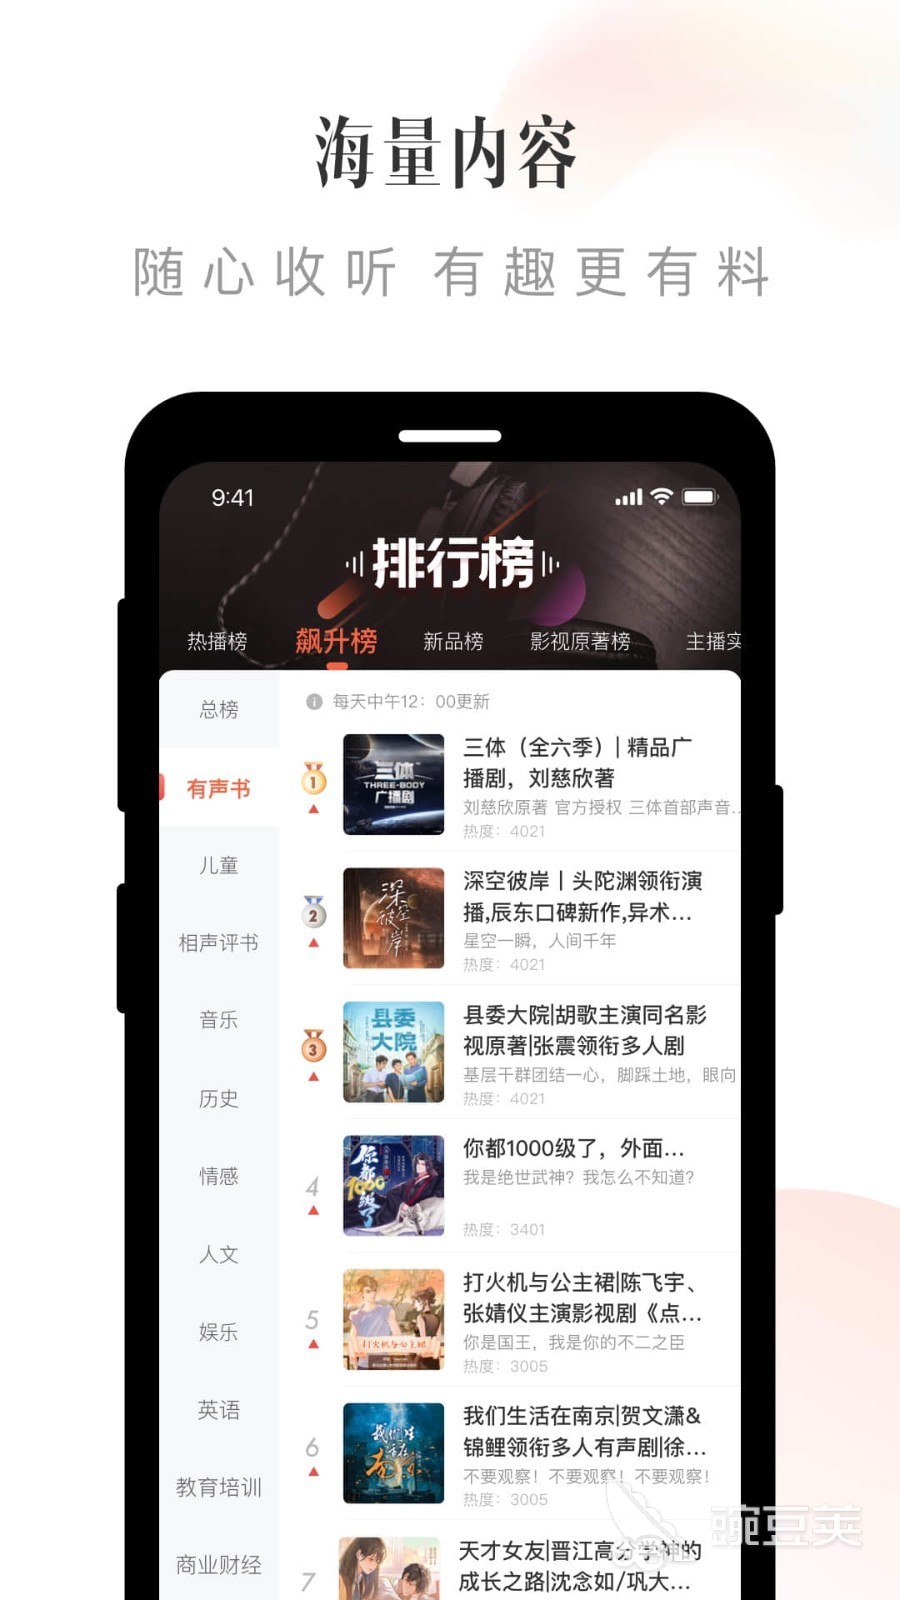 免费听乐可广播剧的app推荐 热门免费听广播软件排行榜